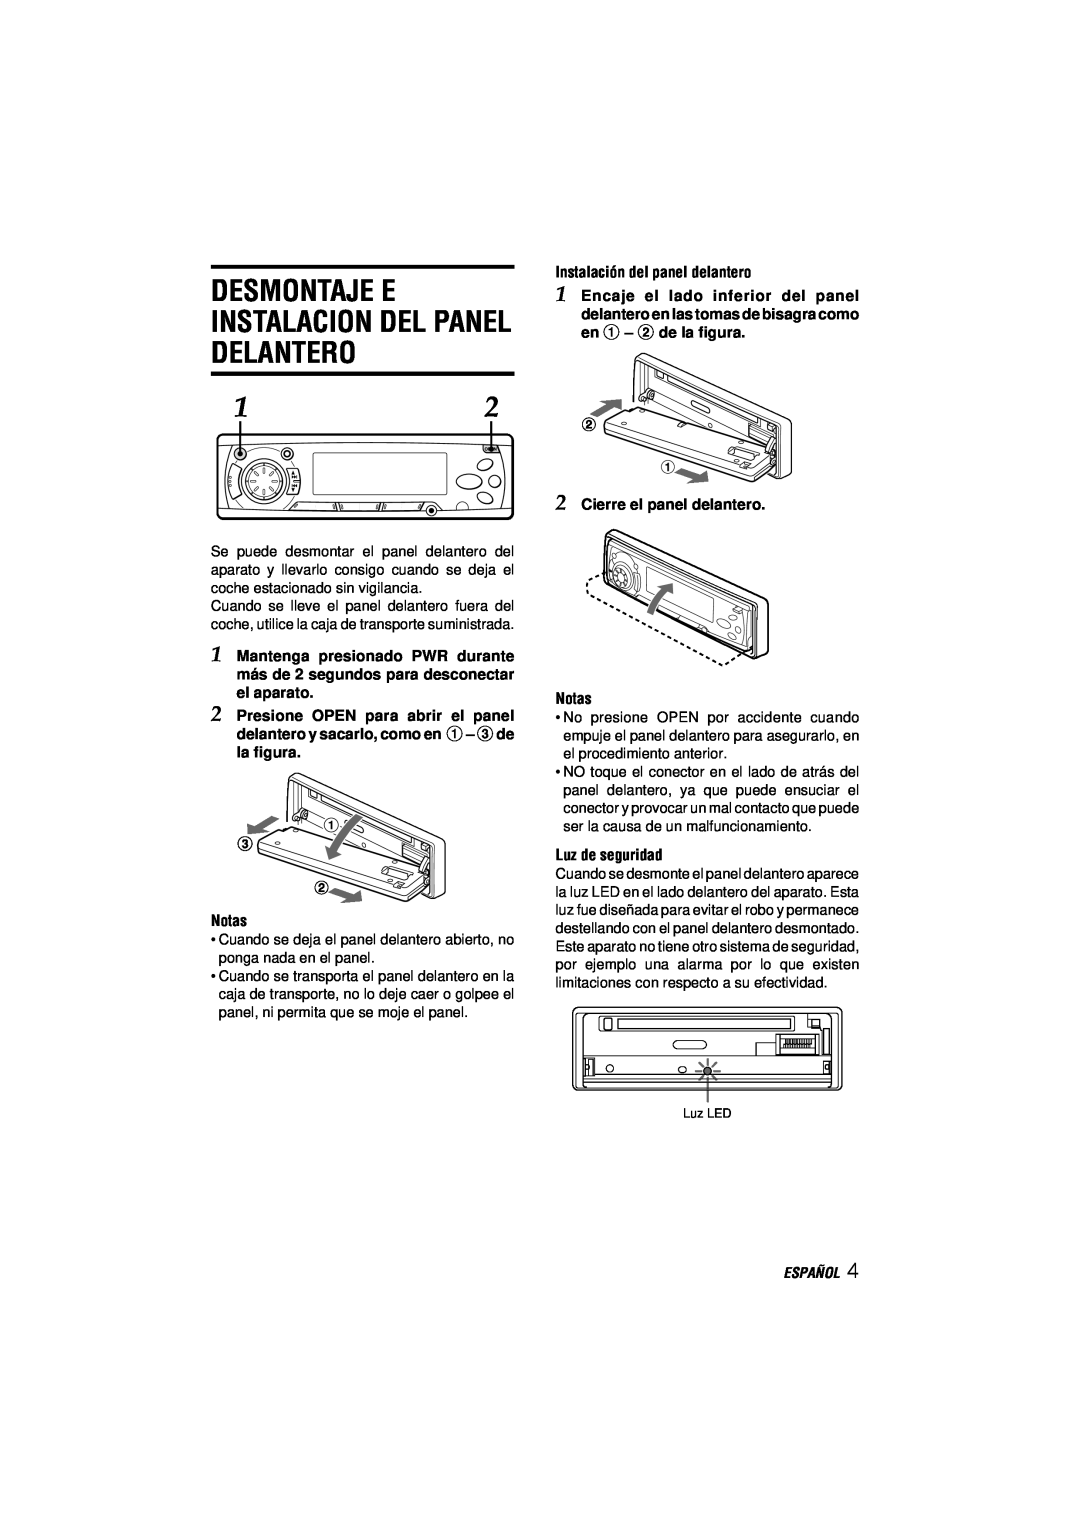 Aiwa CDC-MP3 manual Desmontaje E Instalacion Del Panel Delantero, Instalación del panel delantero, Notas, Luz de seguridad 